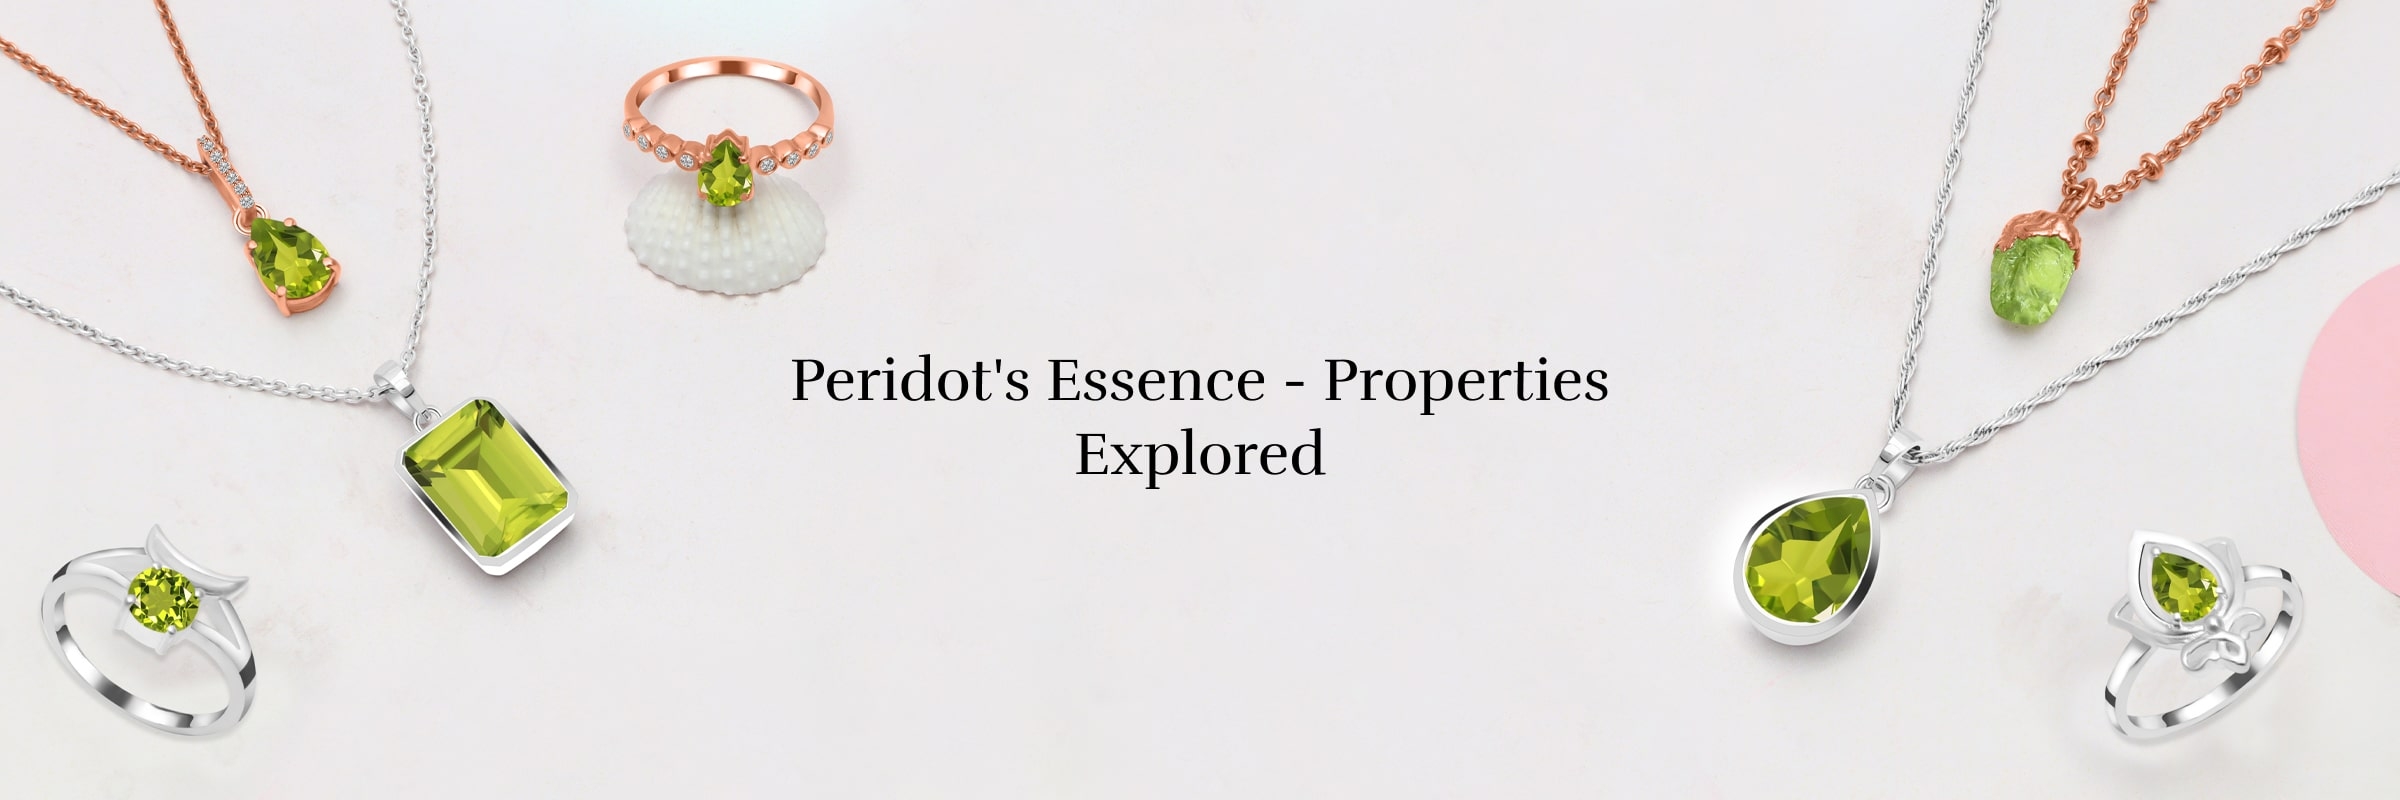 Properties of Peridot